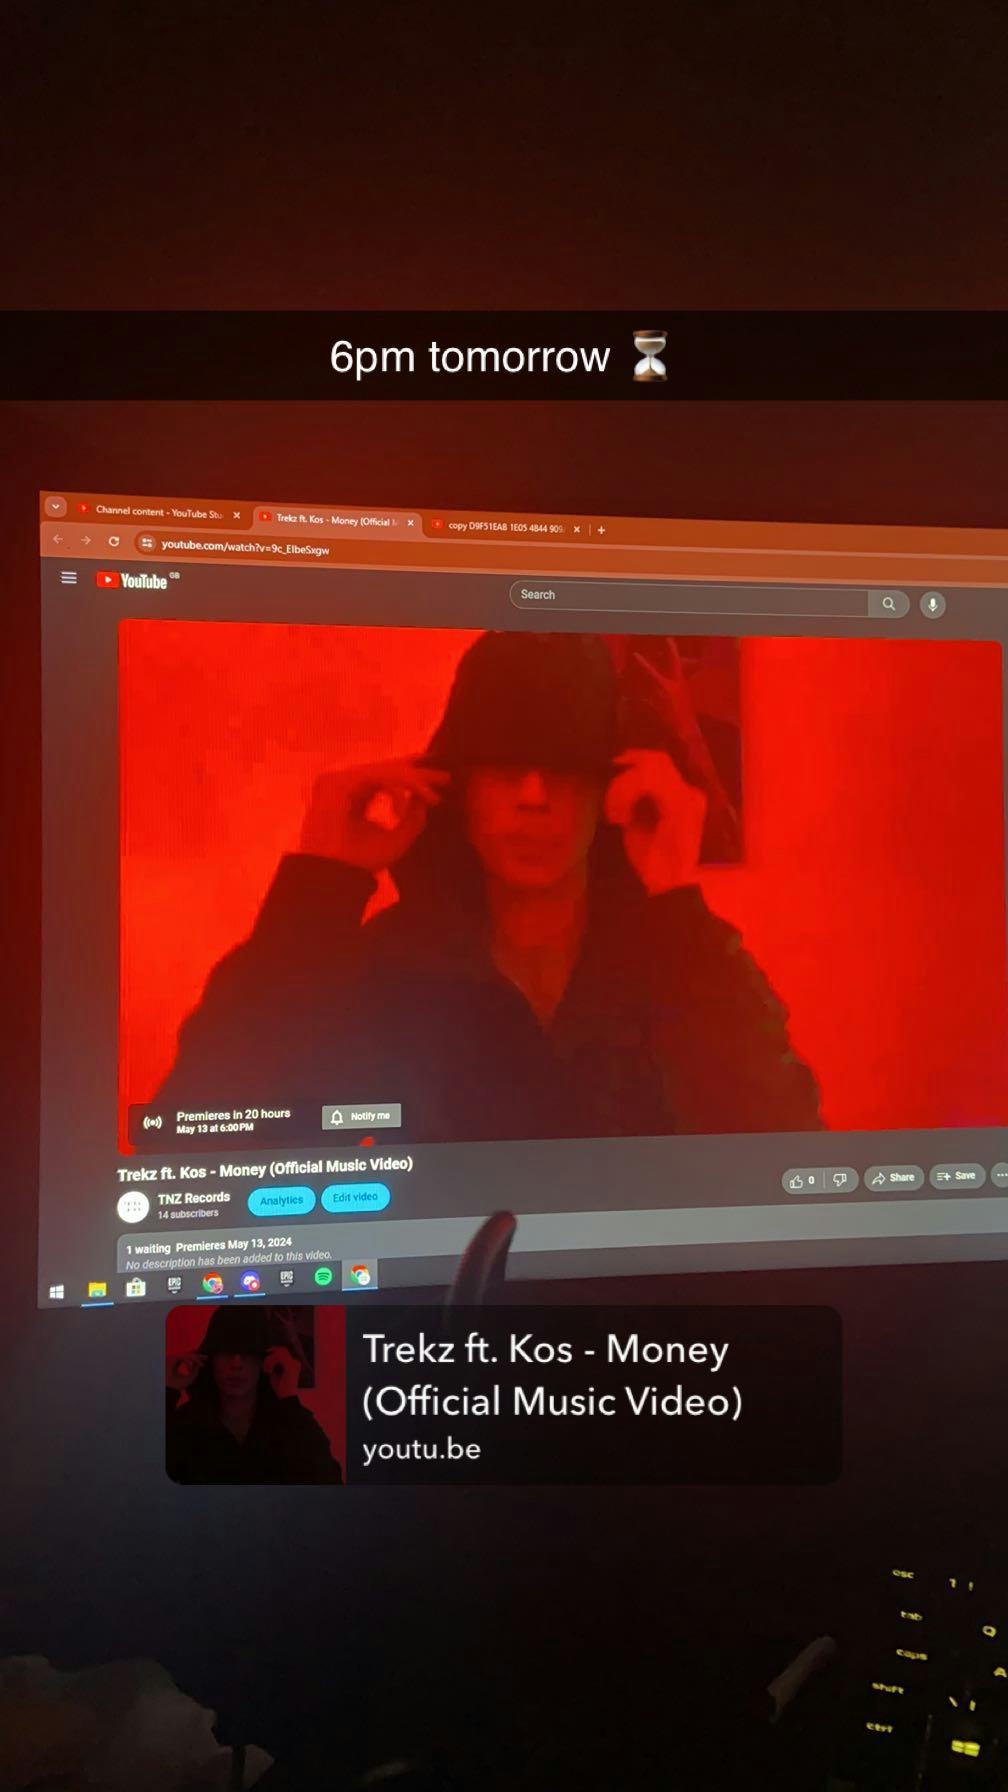 Trekz ft Kos - Money (Official Music Video)